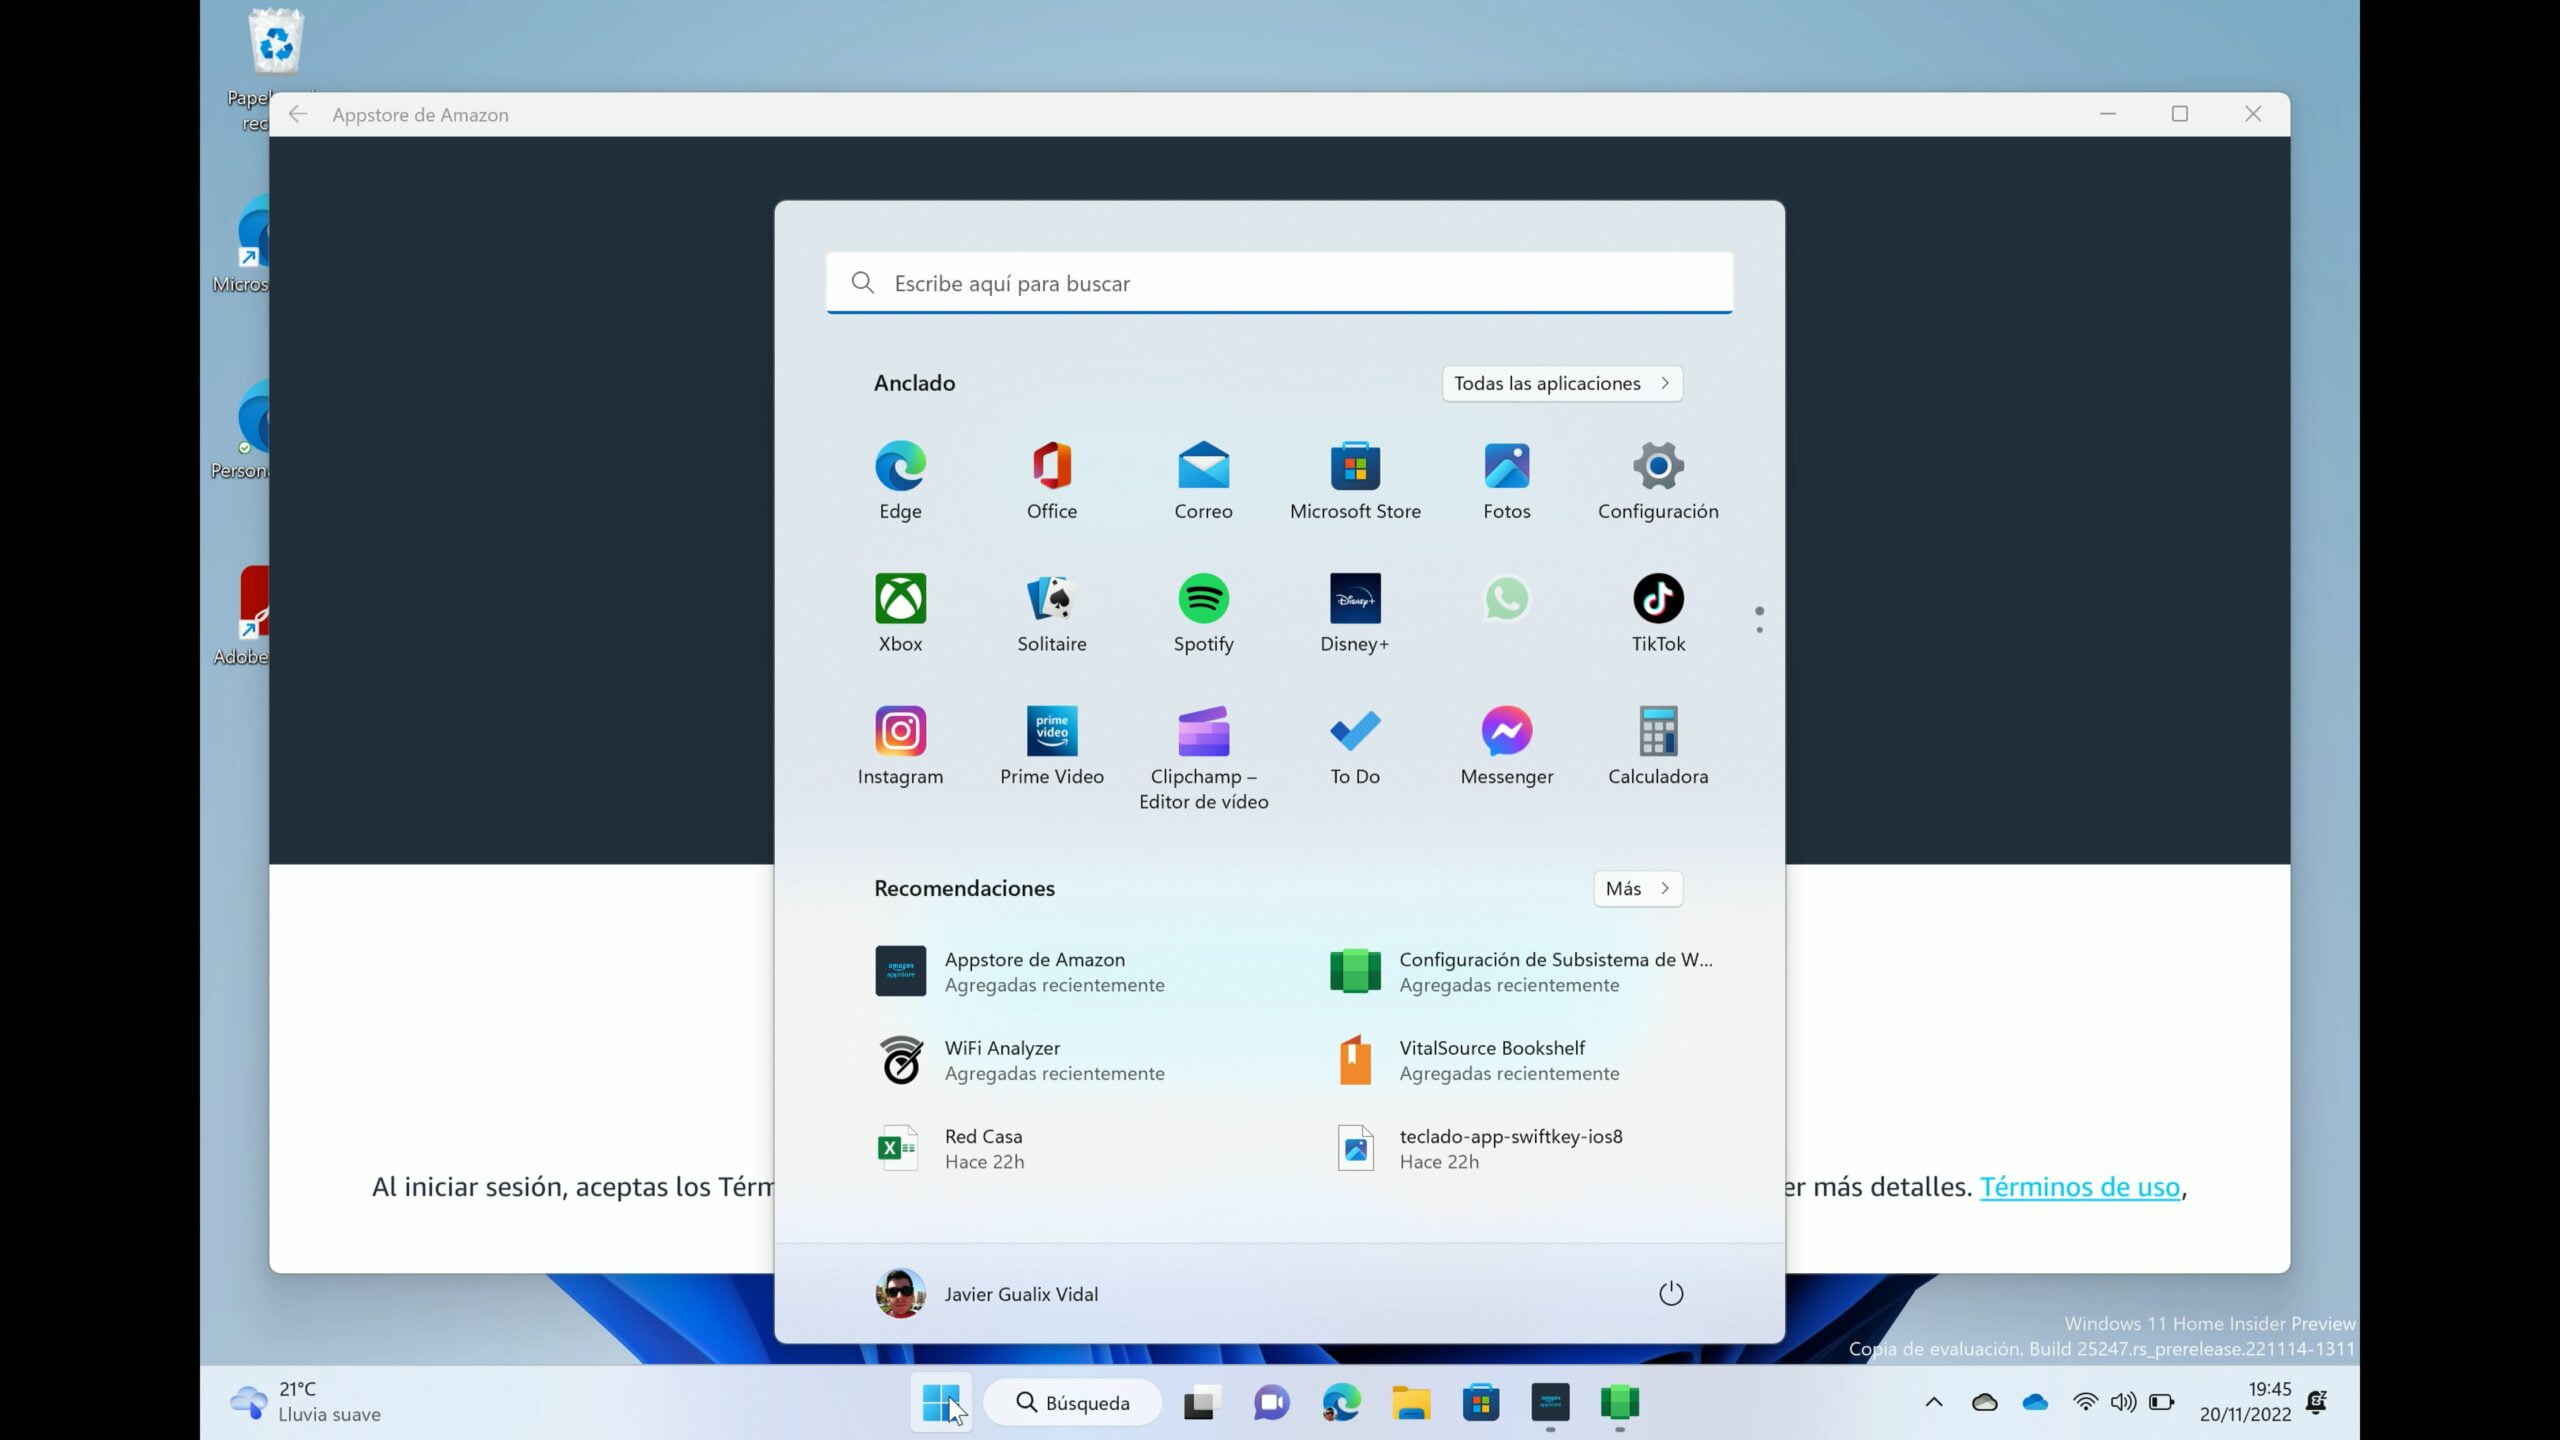 Captura del Menú Inicio de Windows 11 donde aparece la app "Configuración del Subsistema Windows para Android" en el apartado Recomendaciones